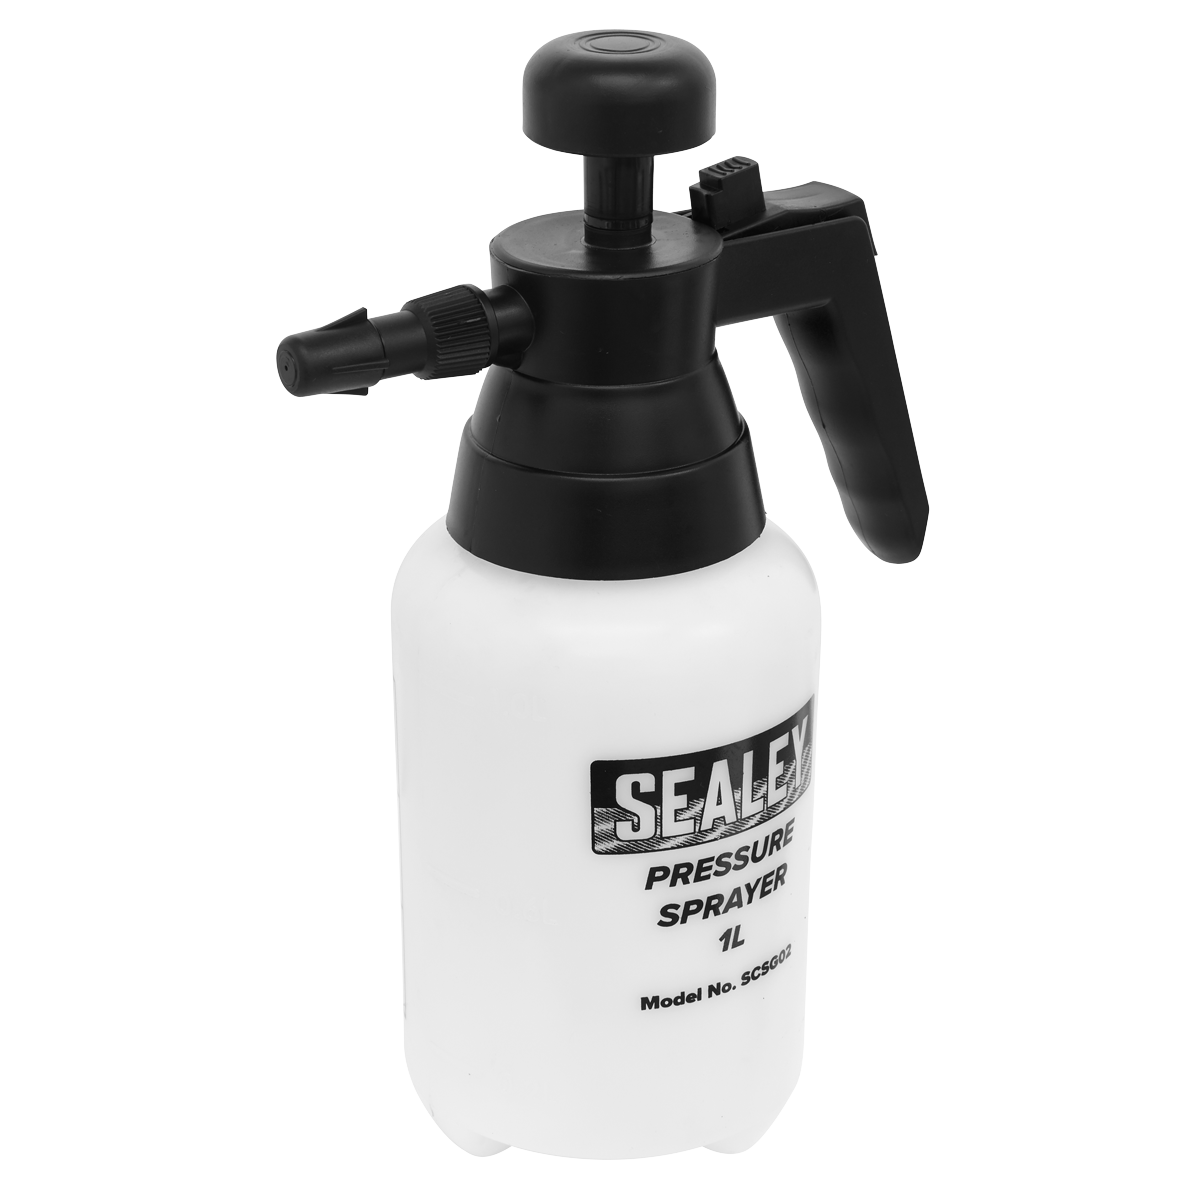 Sealey Pressure Sprayer with Viton® Seals 1L